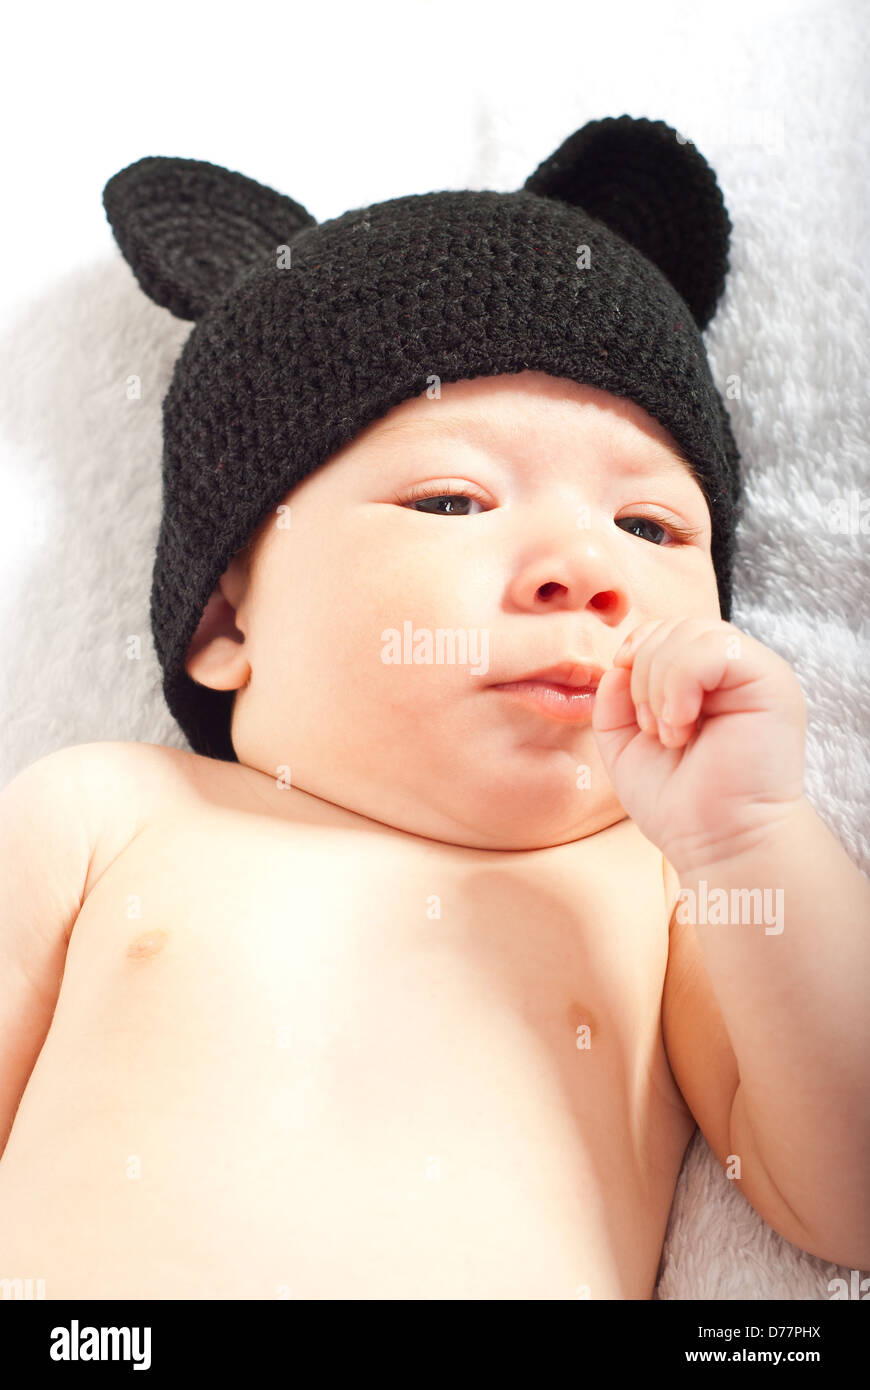 Baby Boy con tejido gorro negro con orejas Fotografía de stock - Alamy